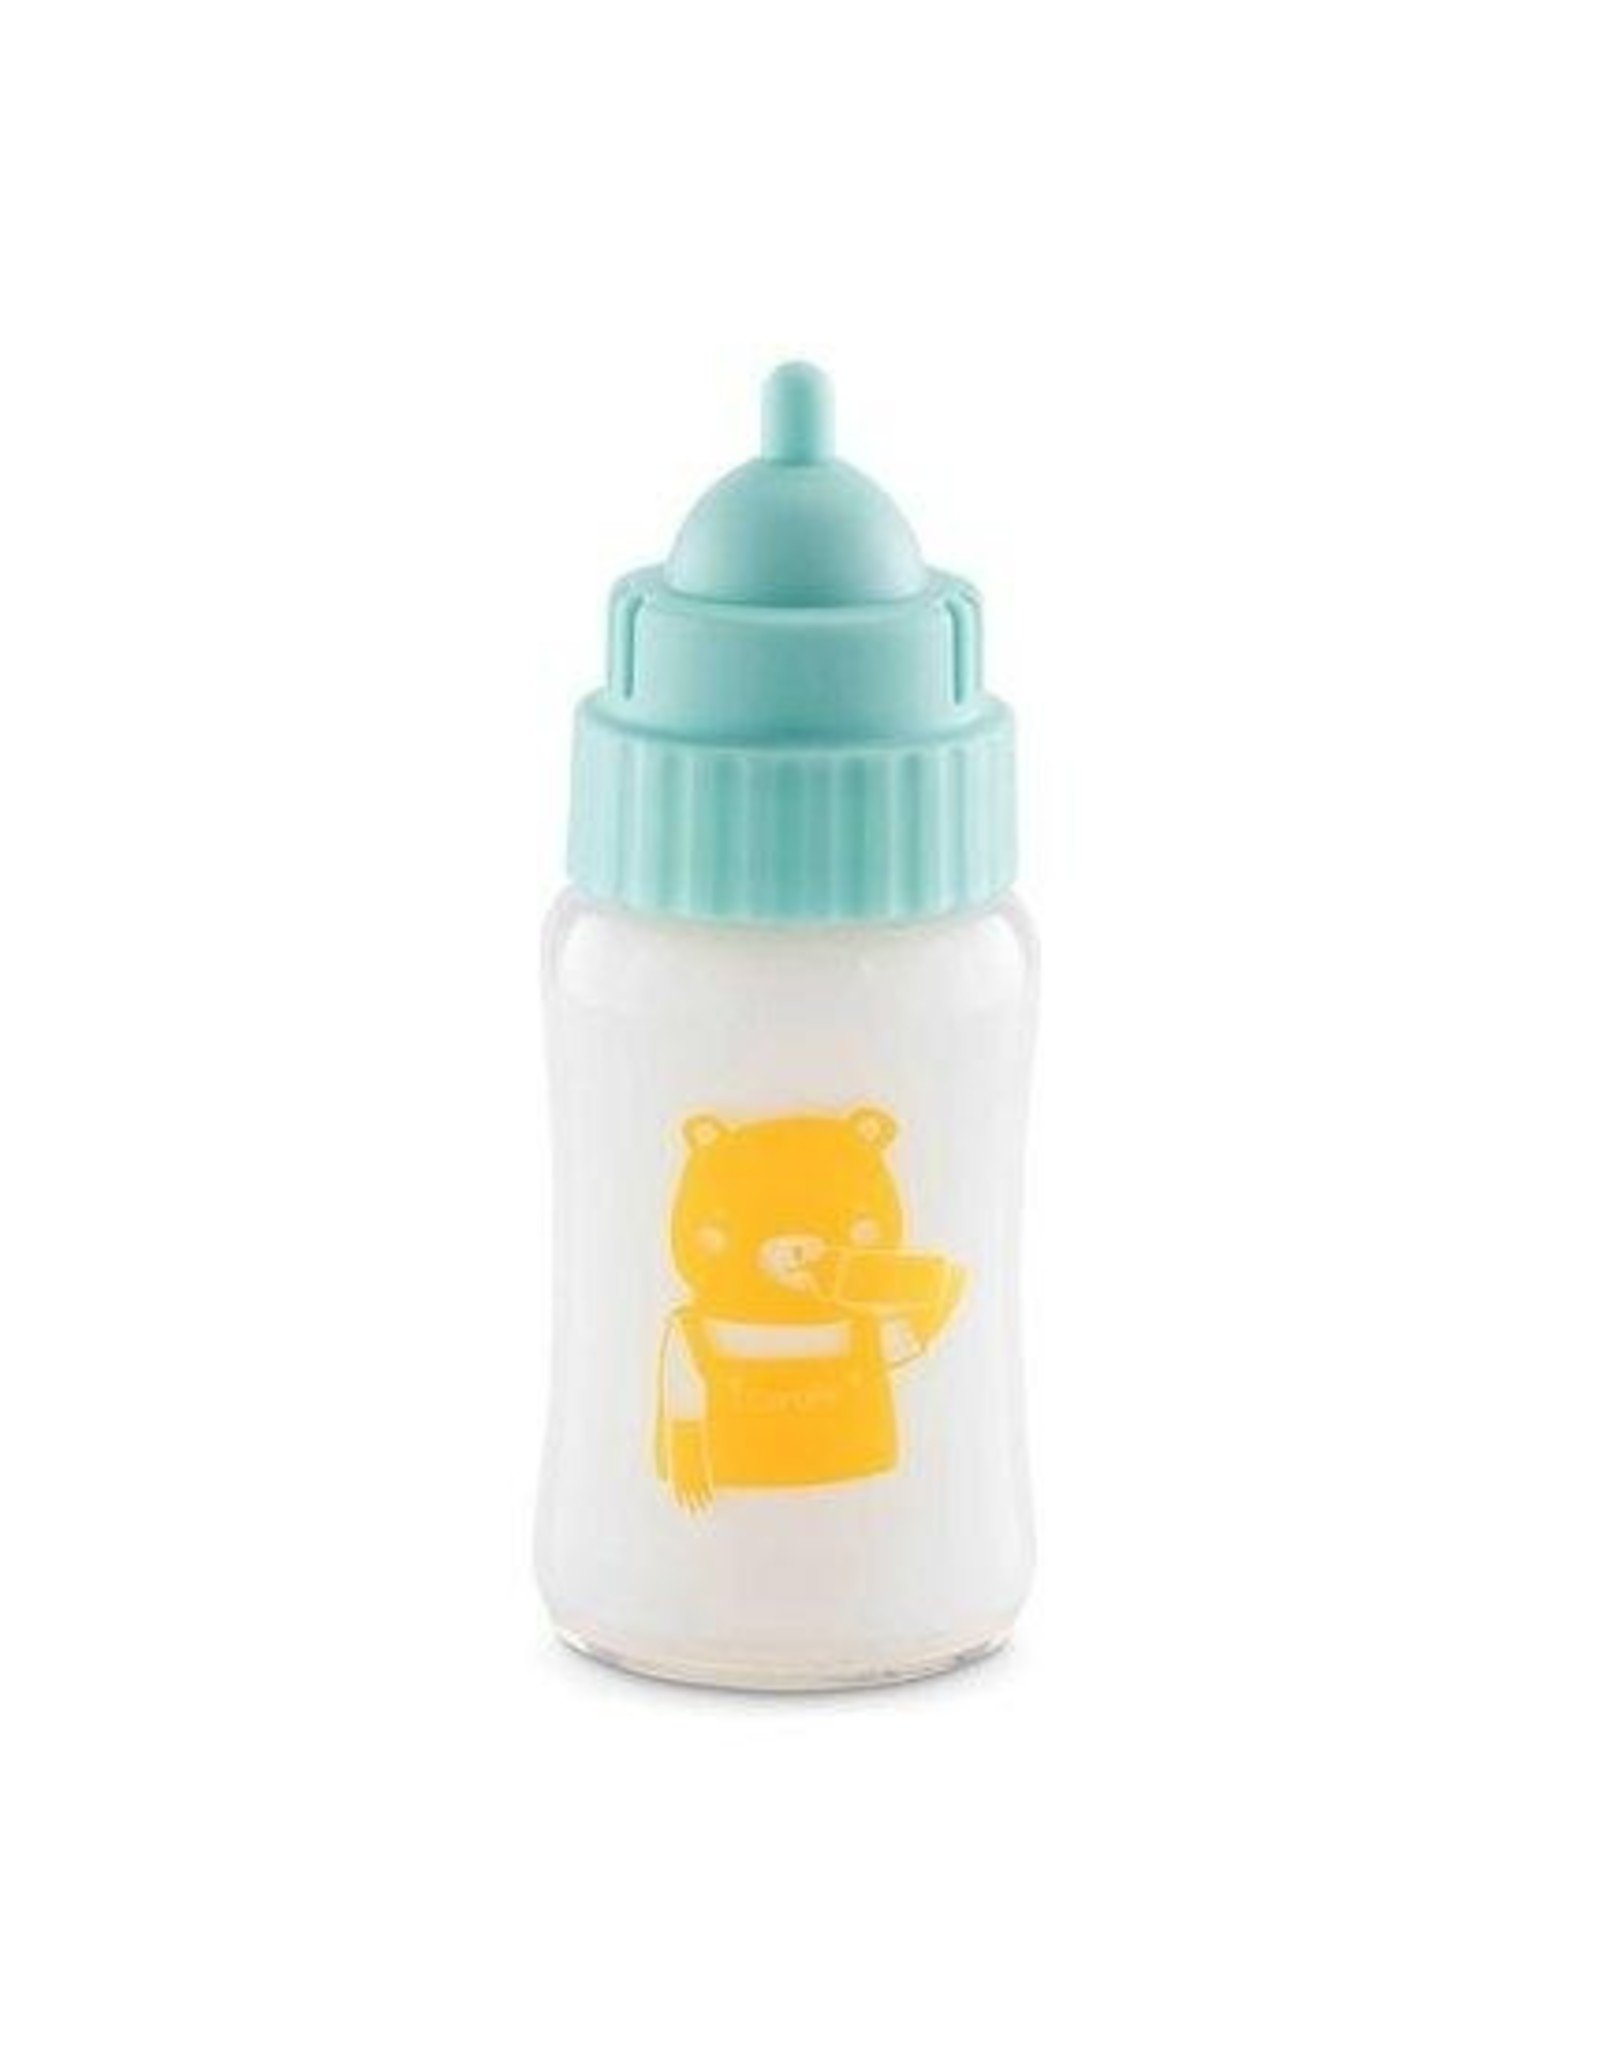 https://cdn.shoplightspeed.com/shops/635116/files/36861431/1600x2048x2/corolle-corolle-14-17-doll-milk-bottle-with-sound.jpg